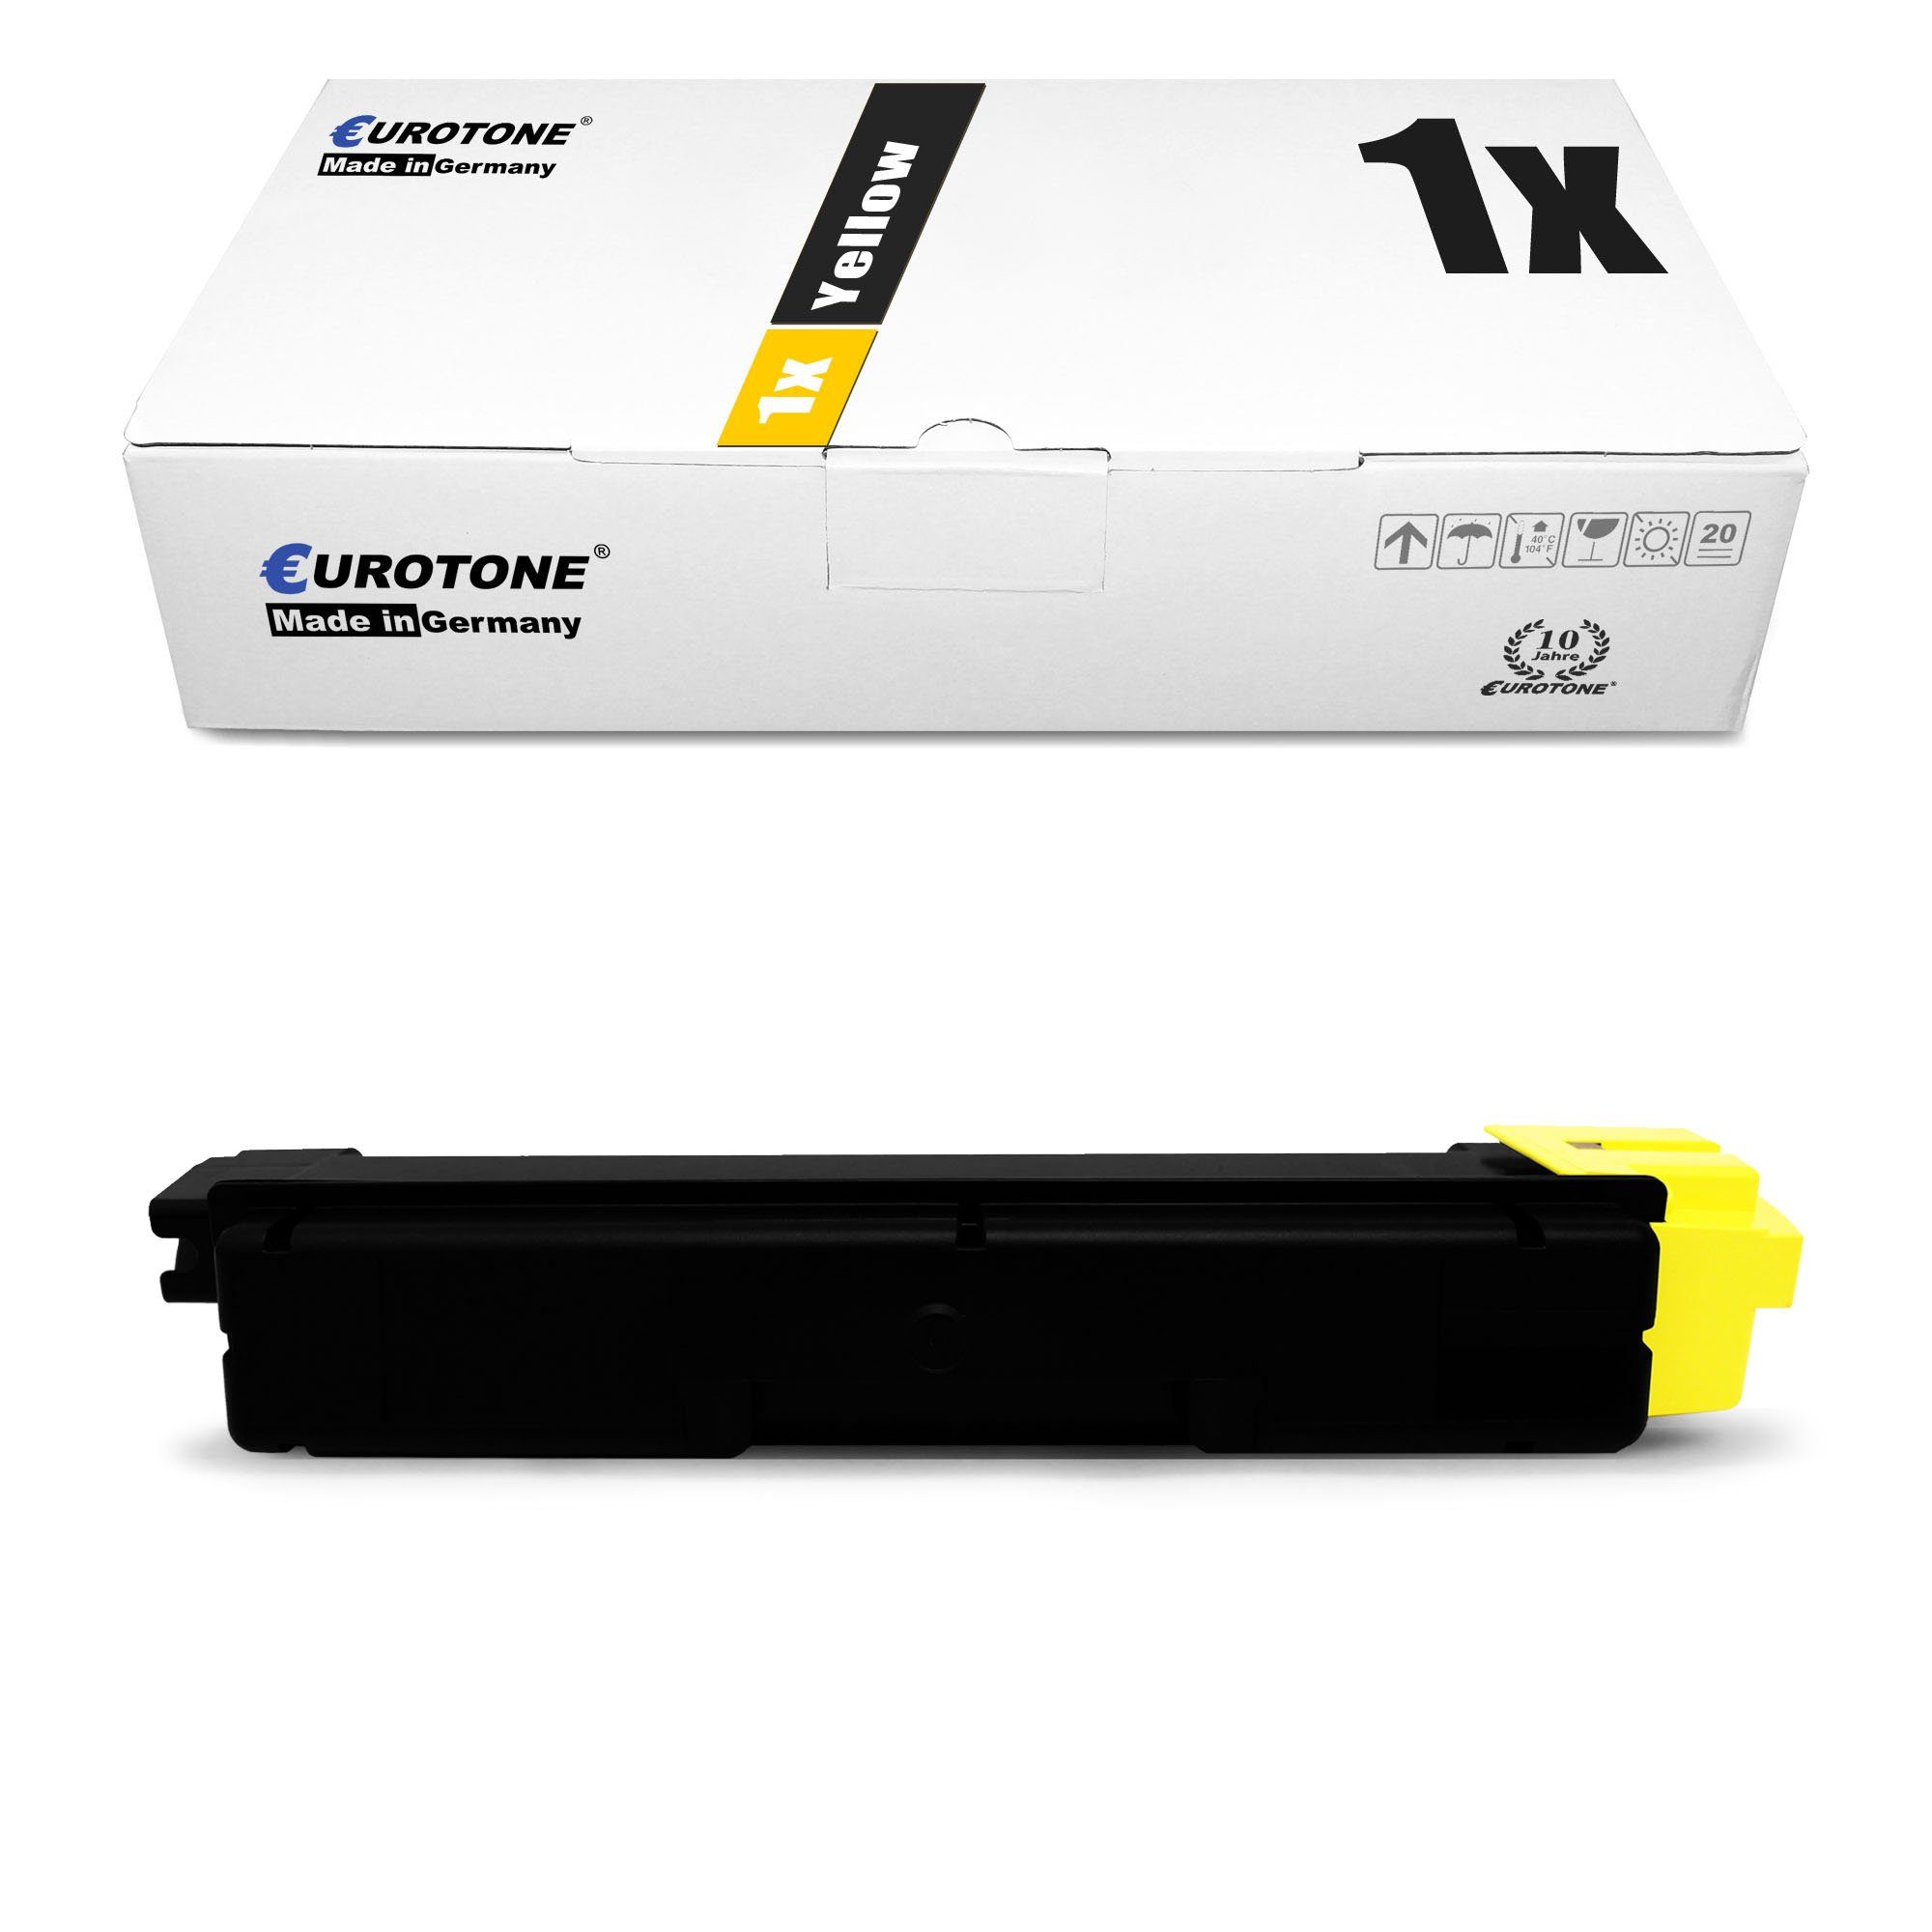 Eurotone Tonerkartusche Kyocera Yellow ersetzt 1T02TWANL0 Toner TK-5280